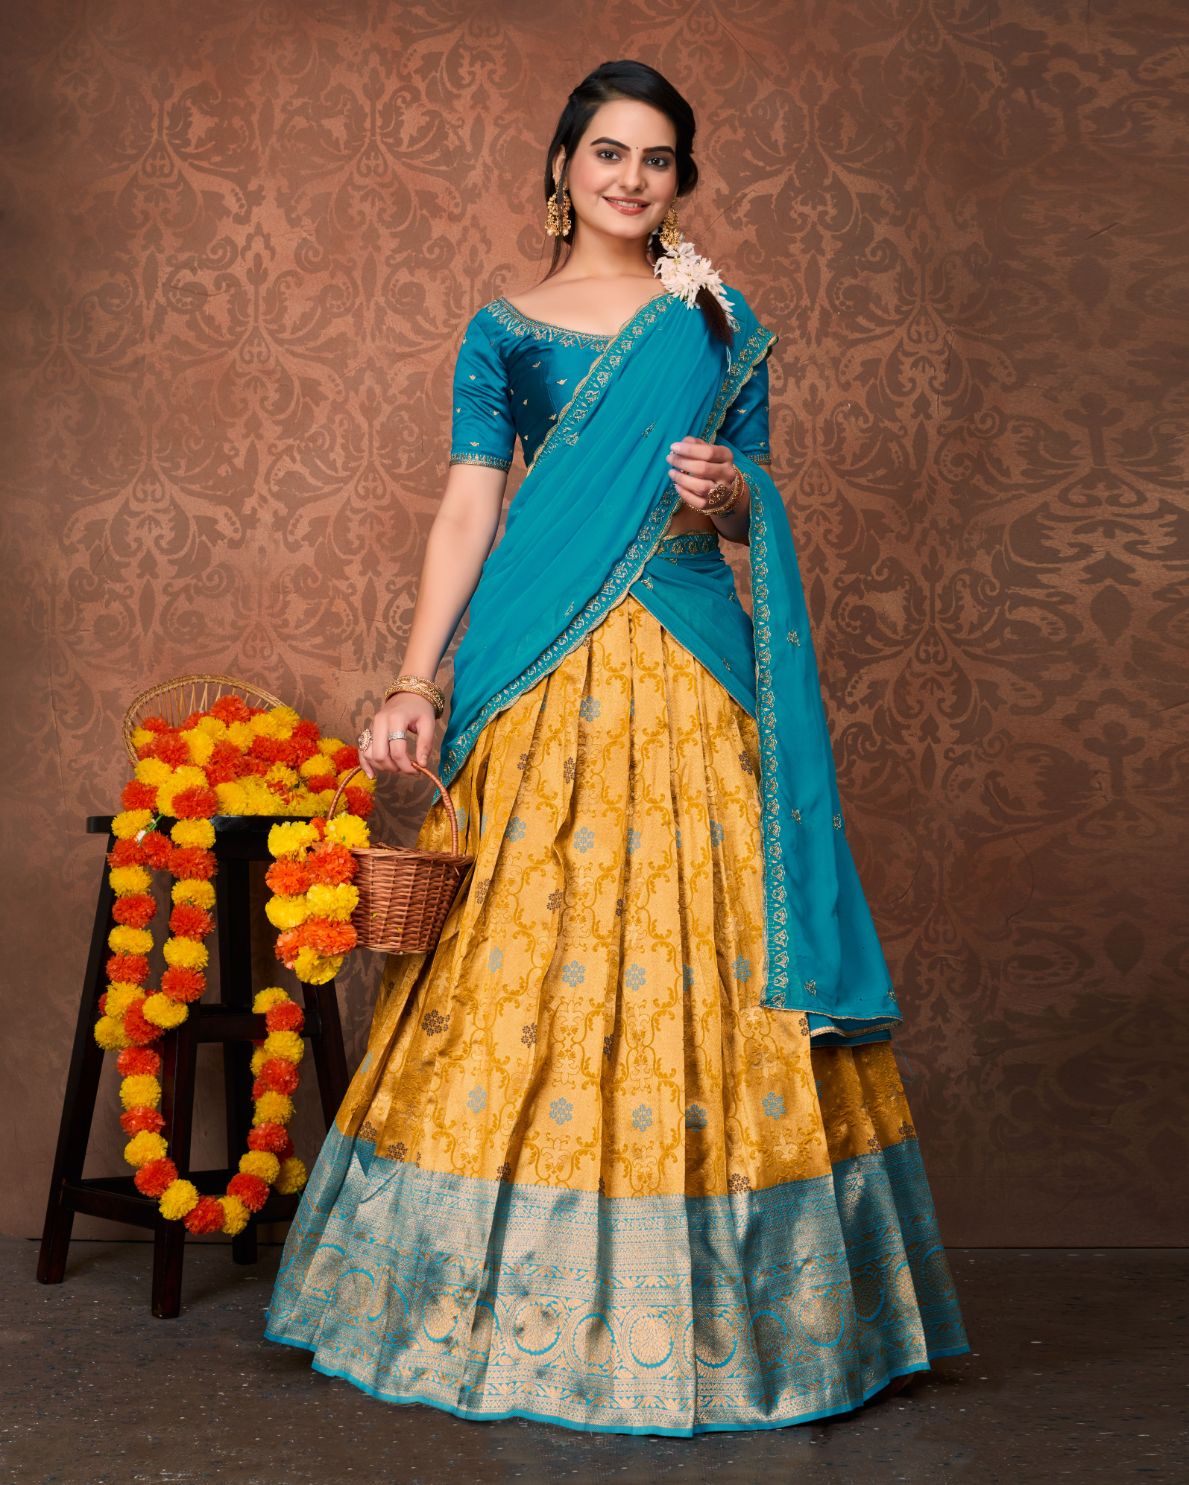 Buy Janasya Women's Sky Blue Georgette Digital Floral Printed Lehenga Choli  With Dupatta Online at Best Prices in India - JioMart.